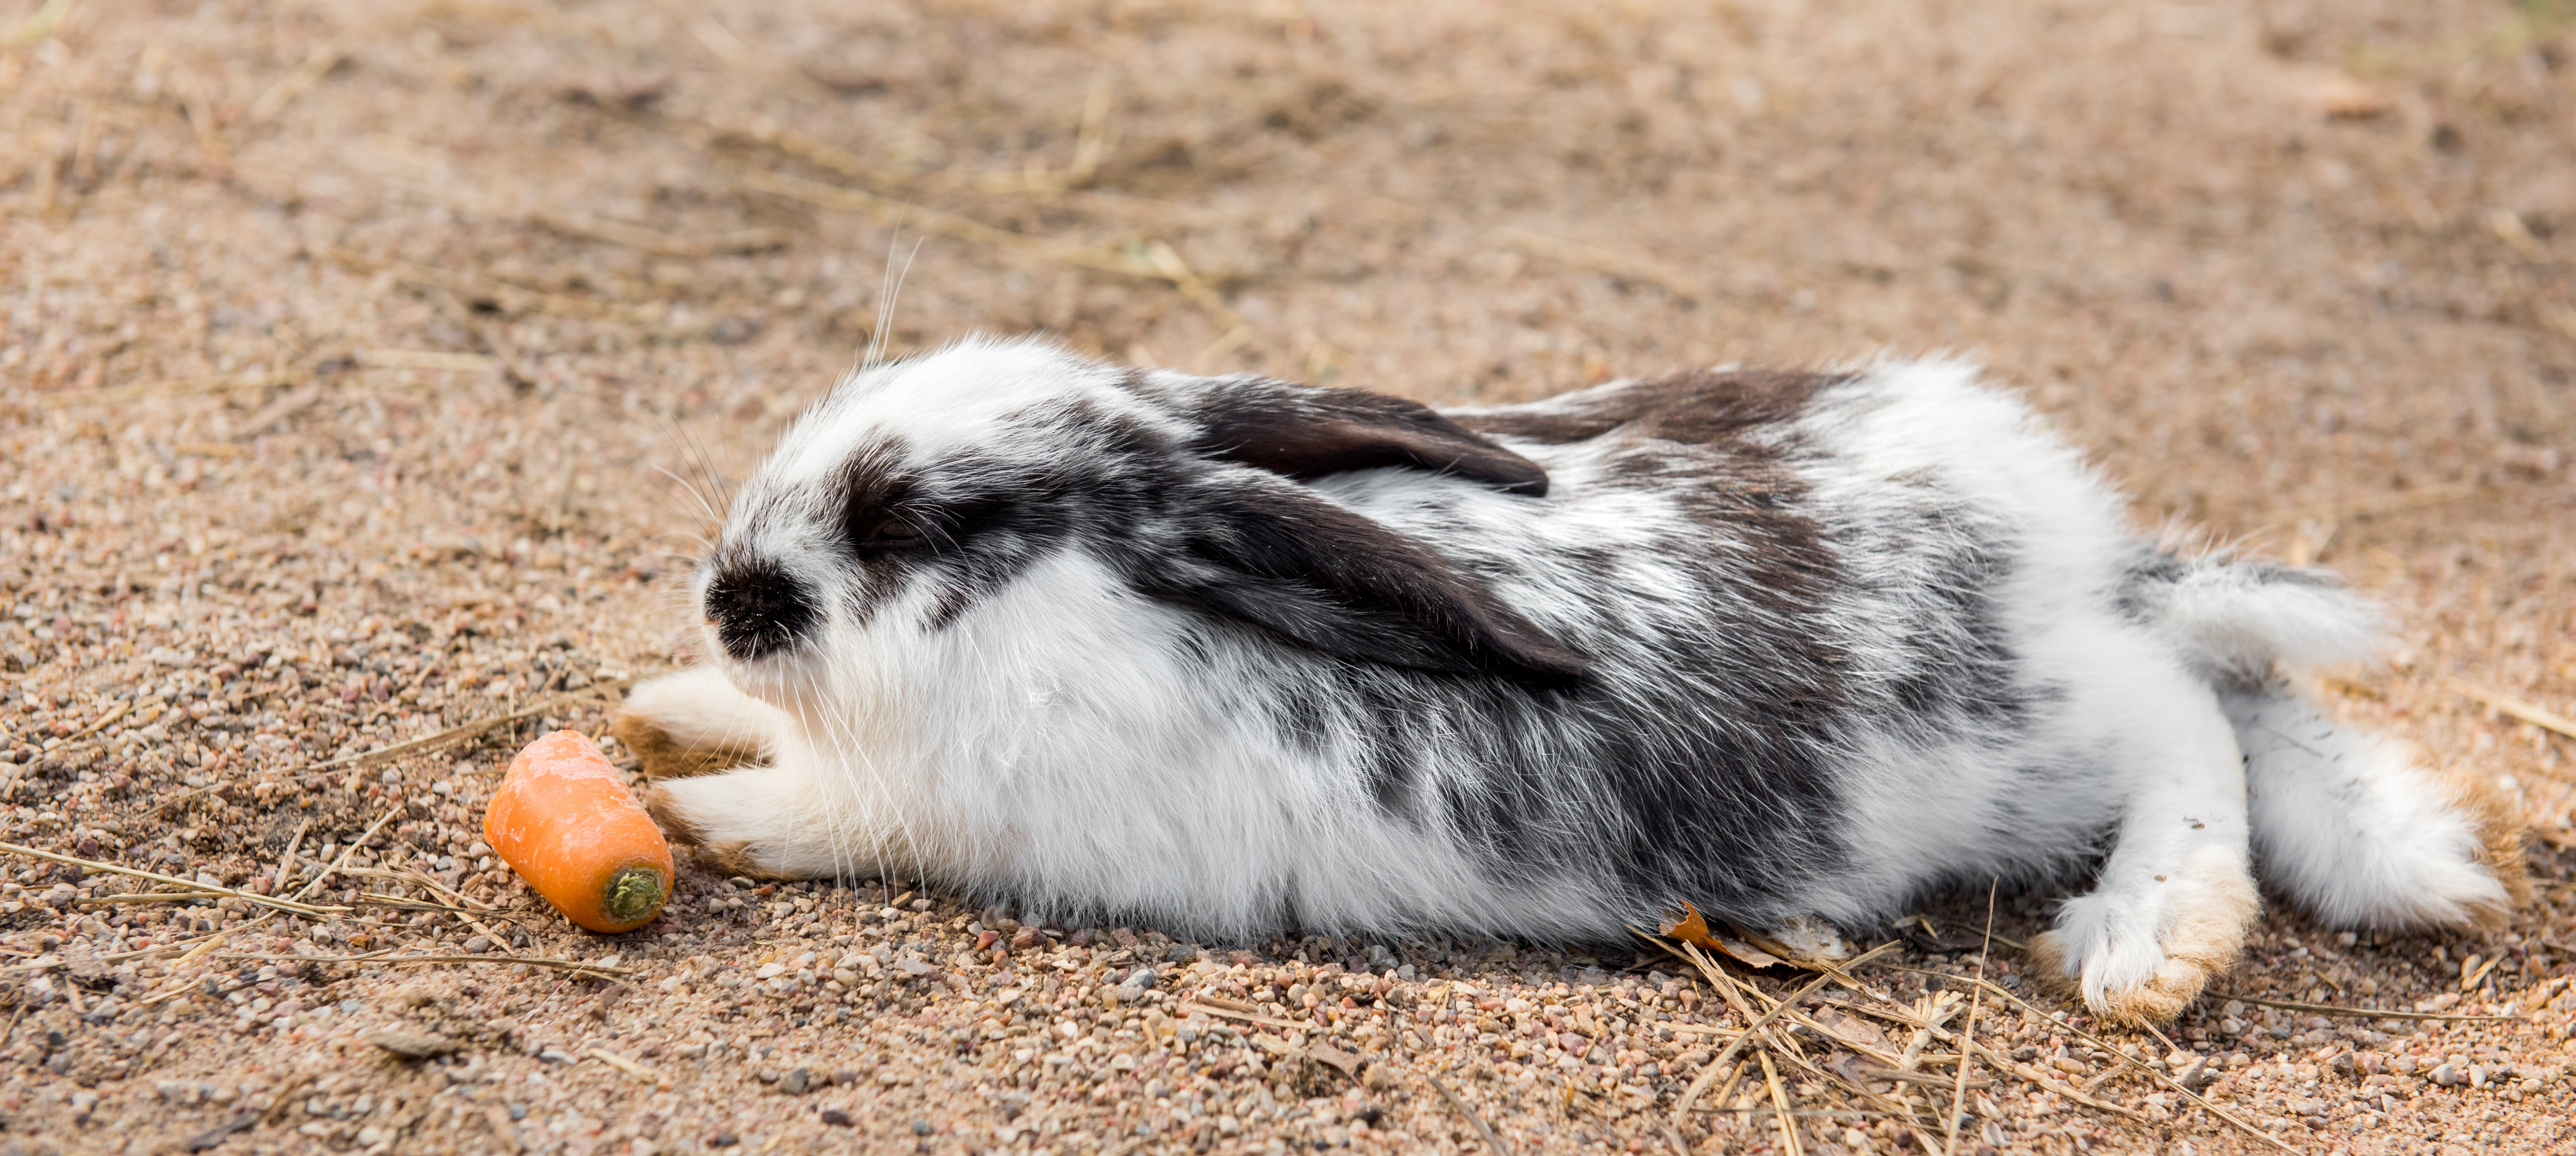 Сено является ключевым элементом в кормлении кроликов.